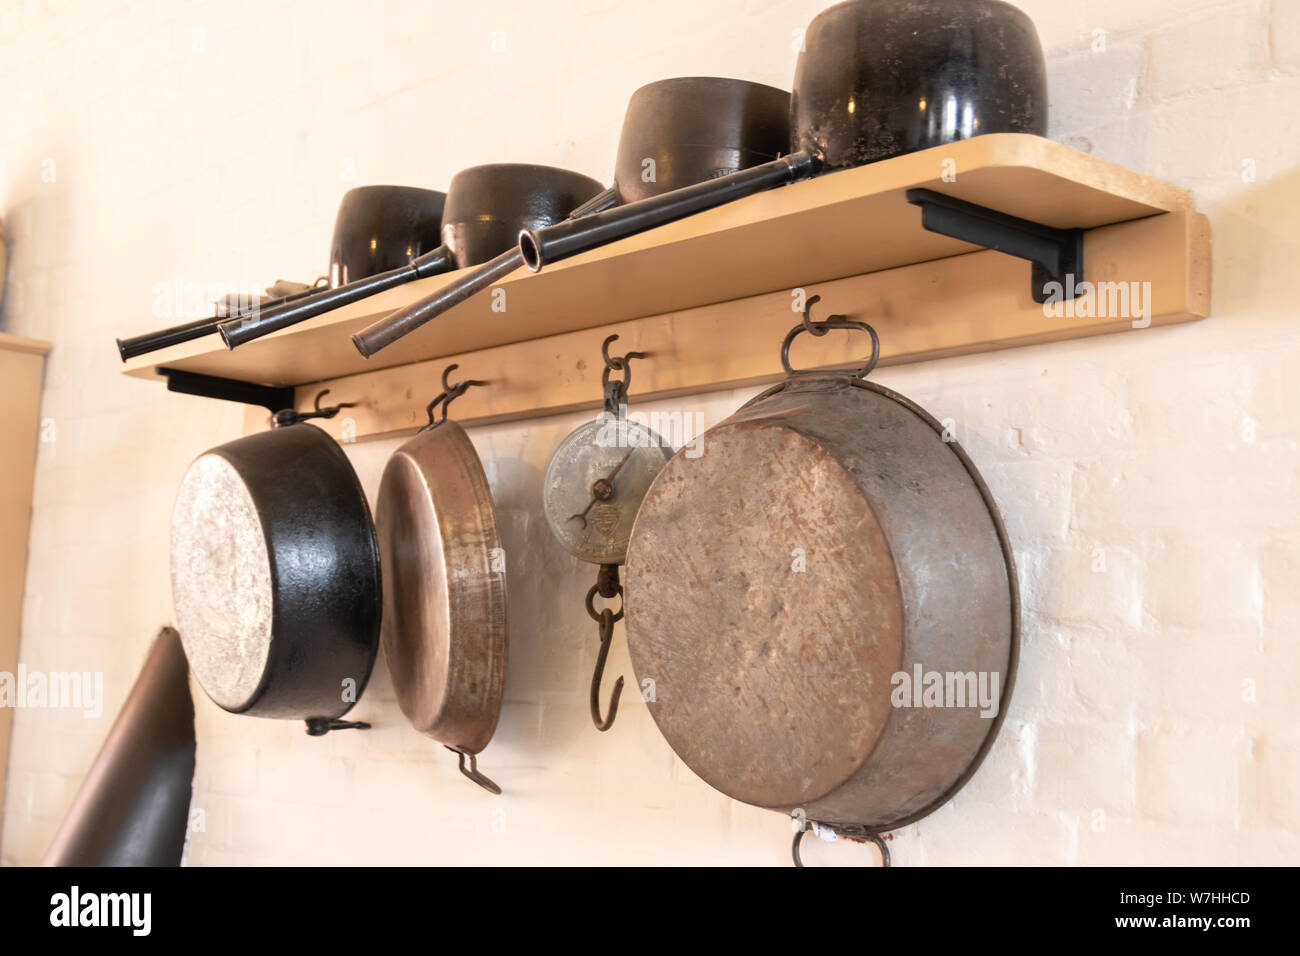 Vintage Töpfe und Pfannen an der Wand aufhängen, in einer alten Küche  Stockfotografie - Alamy